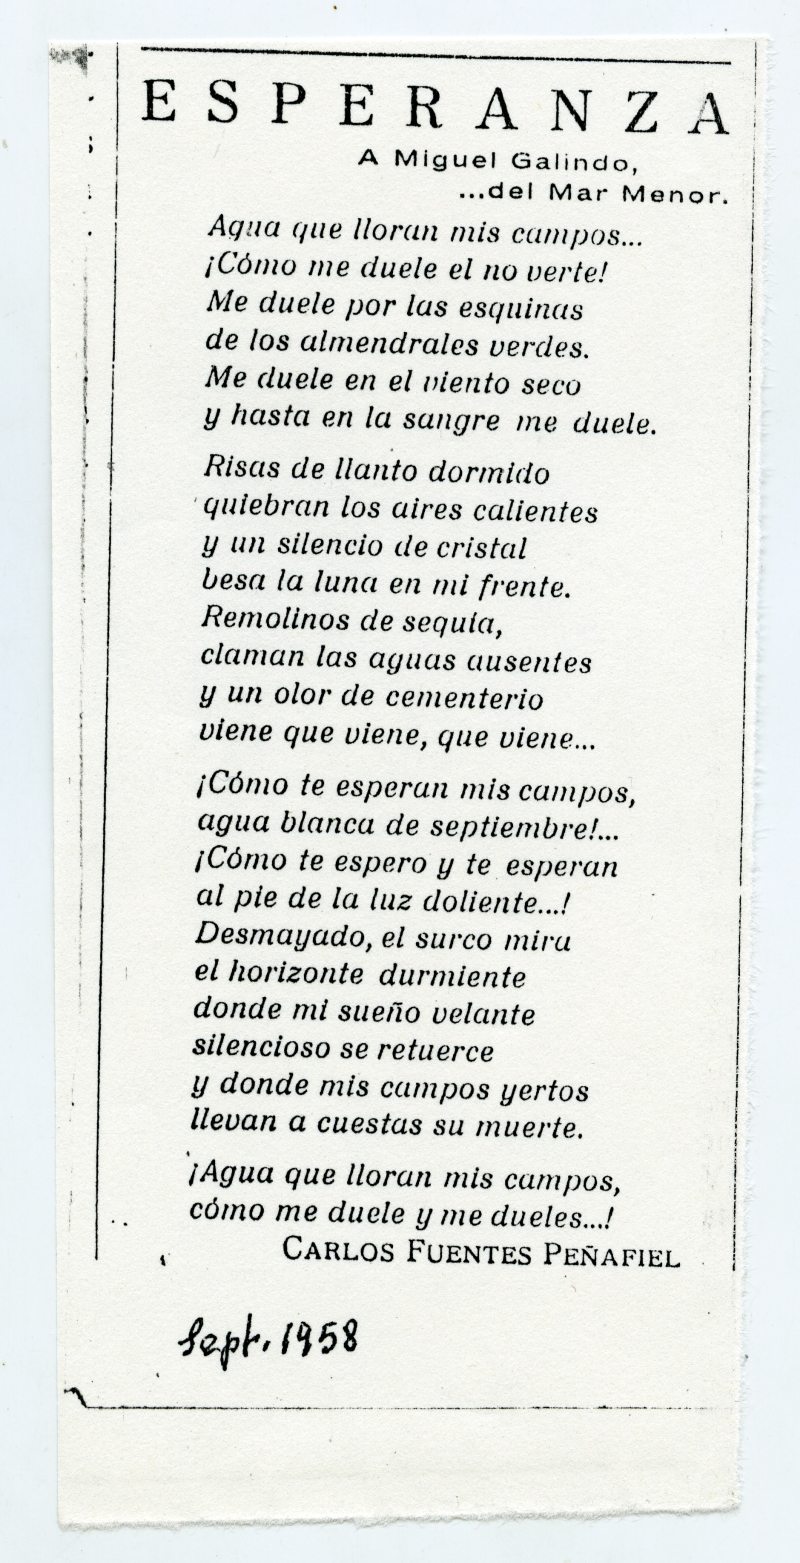 Fotocopia del poema de Carlos Fuentes Peñafiel titulado 